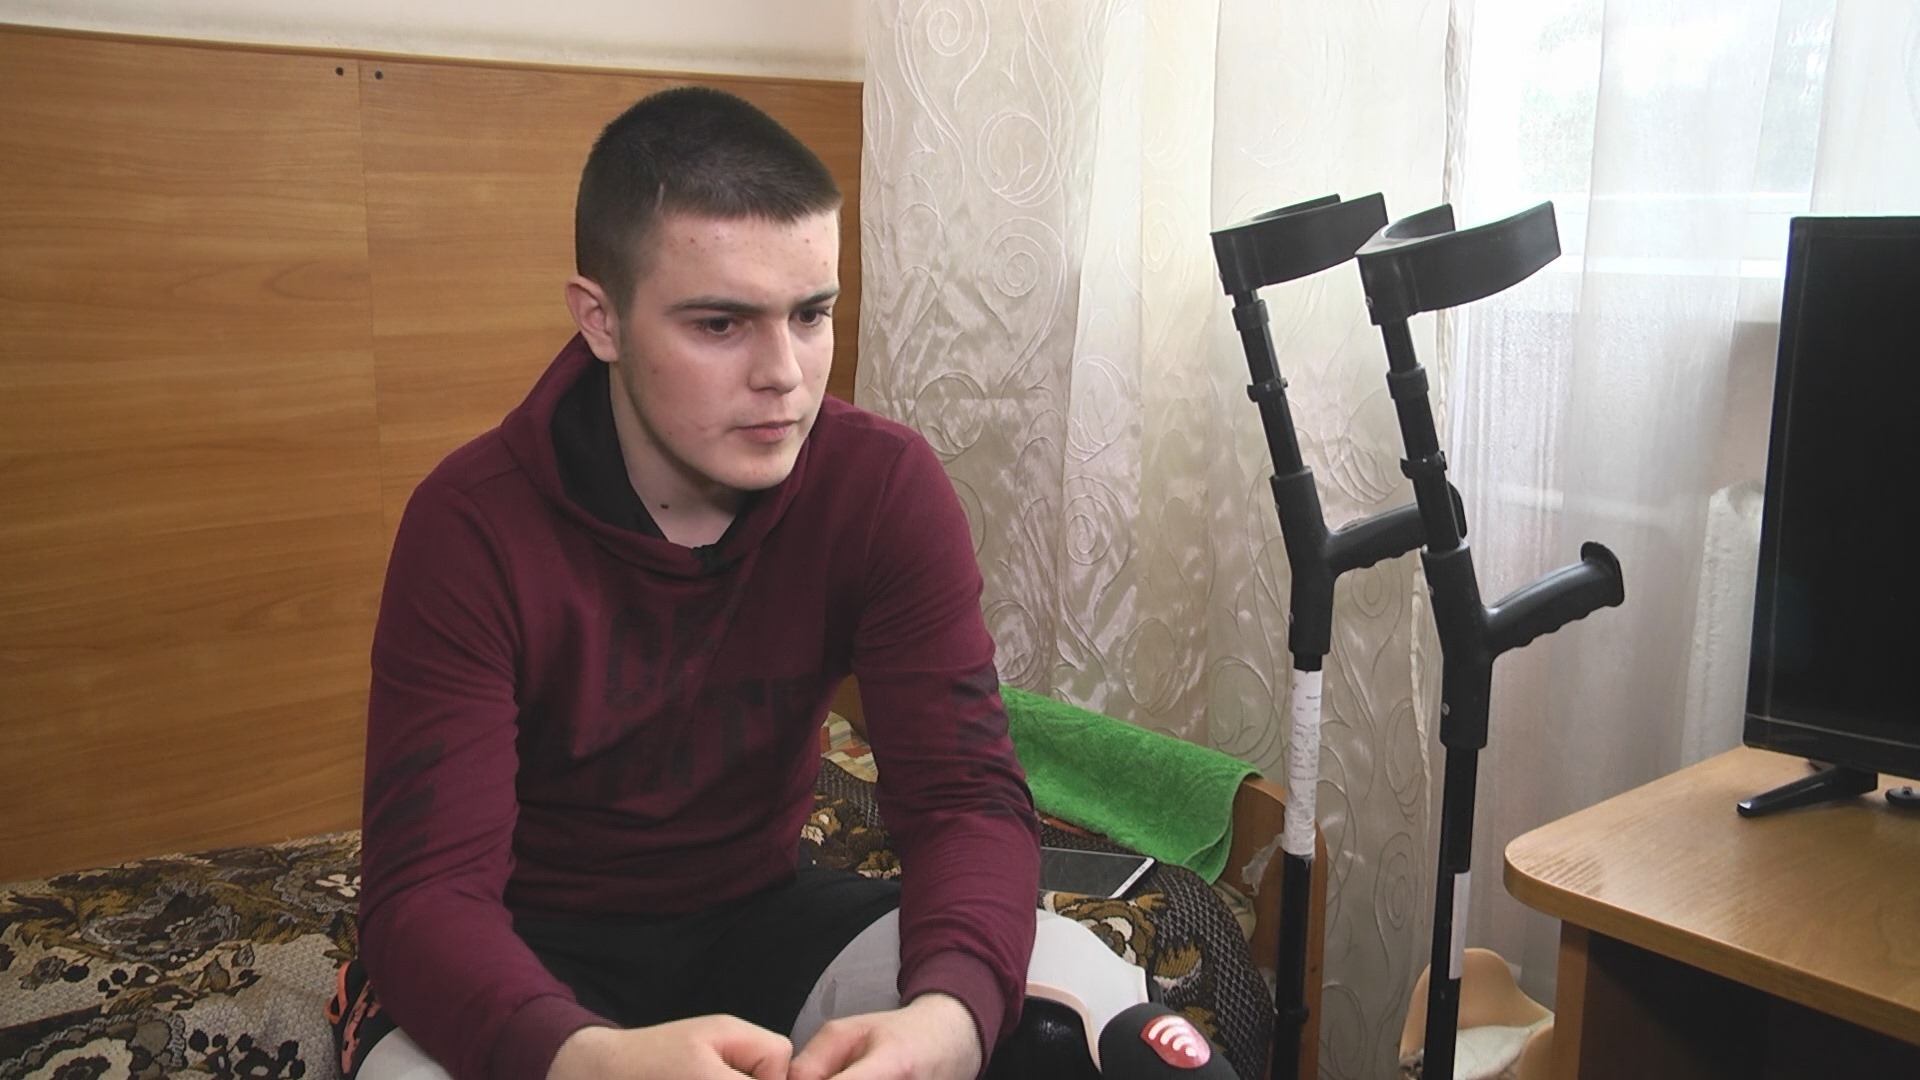 Володимир Авдєєв, який втратив обидві ноги і вчиться ходити на протезах: "Інвалідність – не вирок"